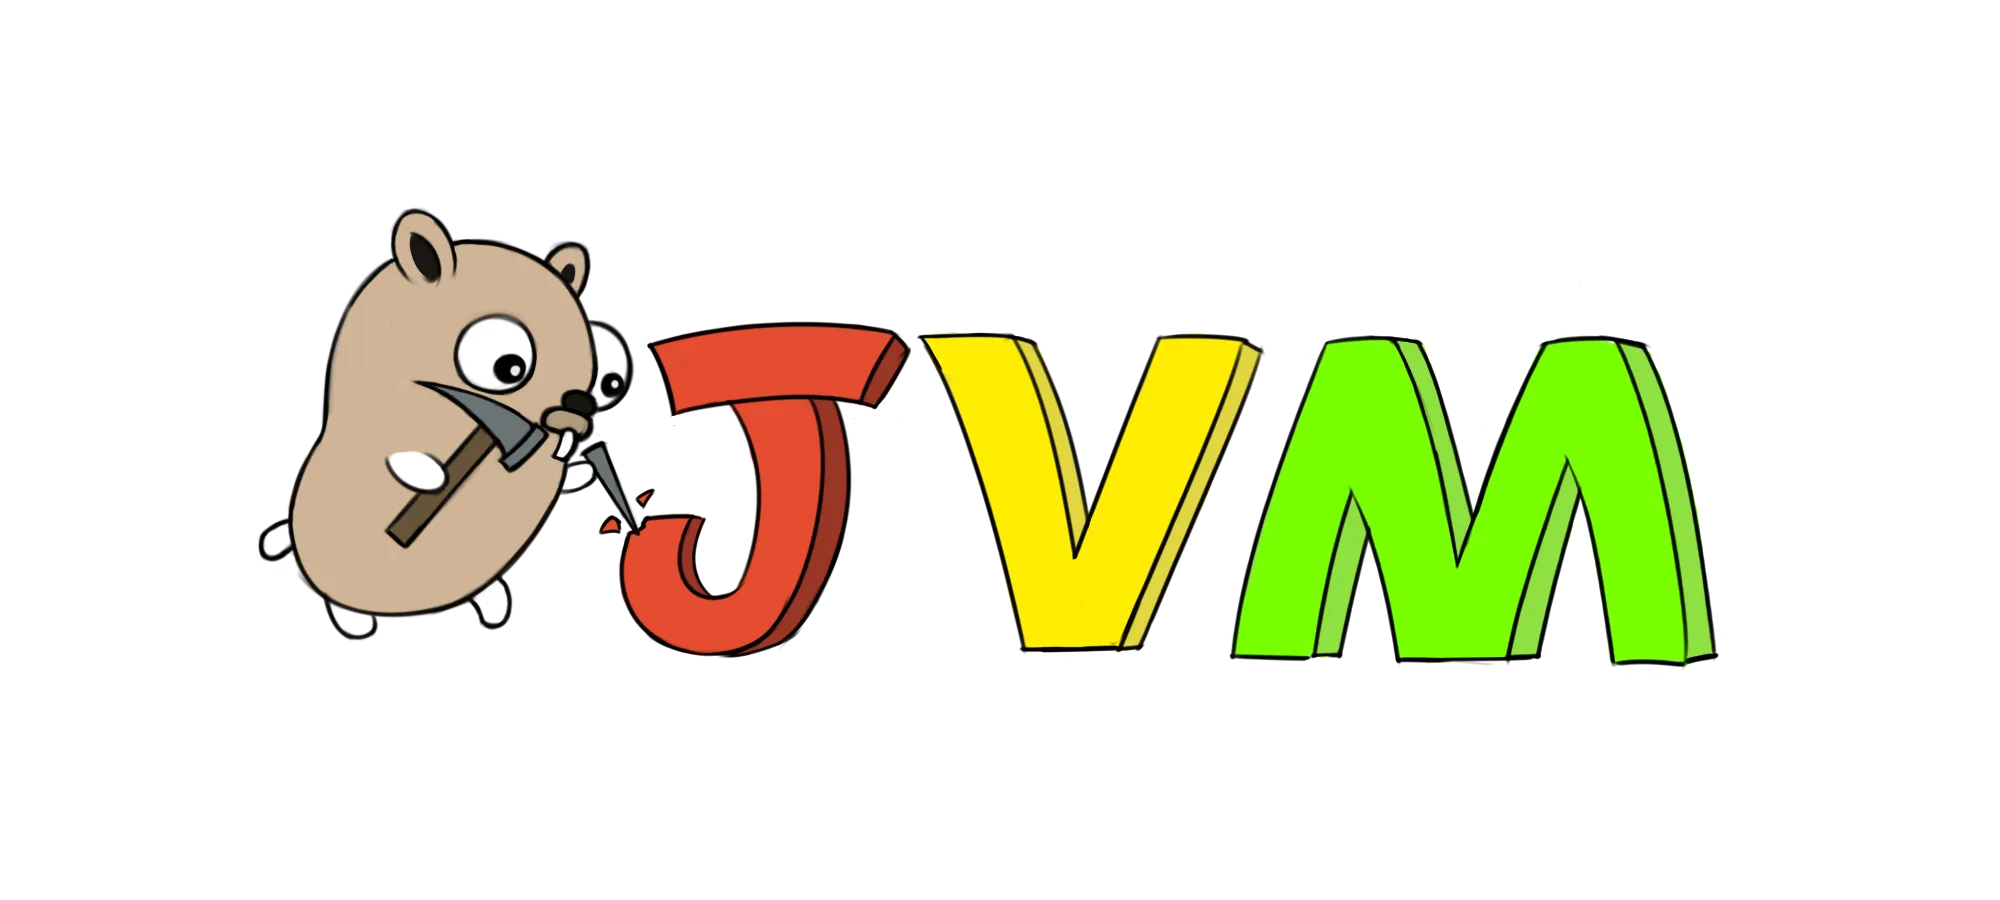 关于JVM的内存模型